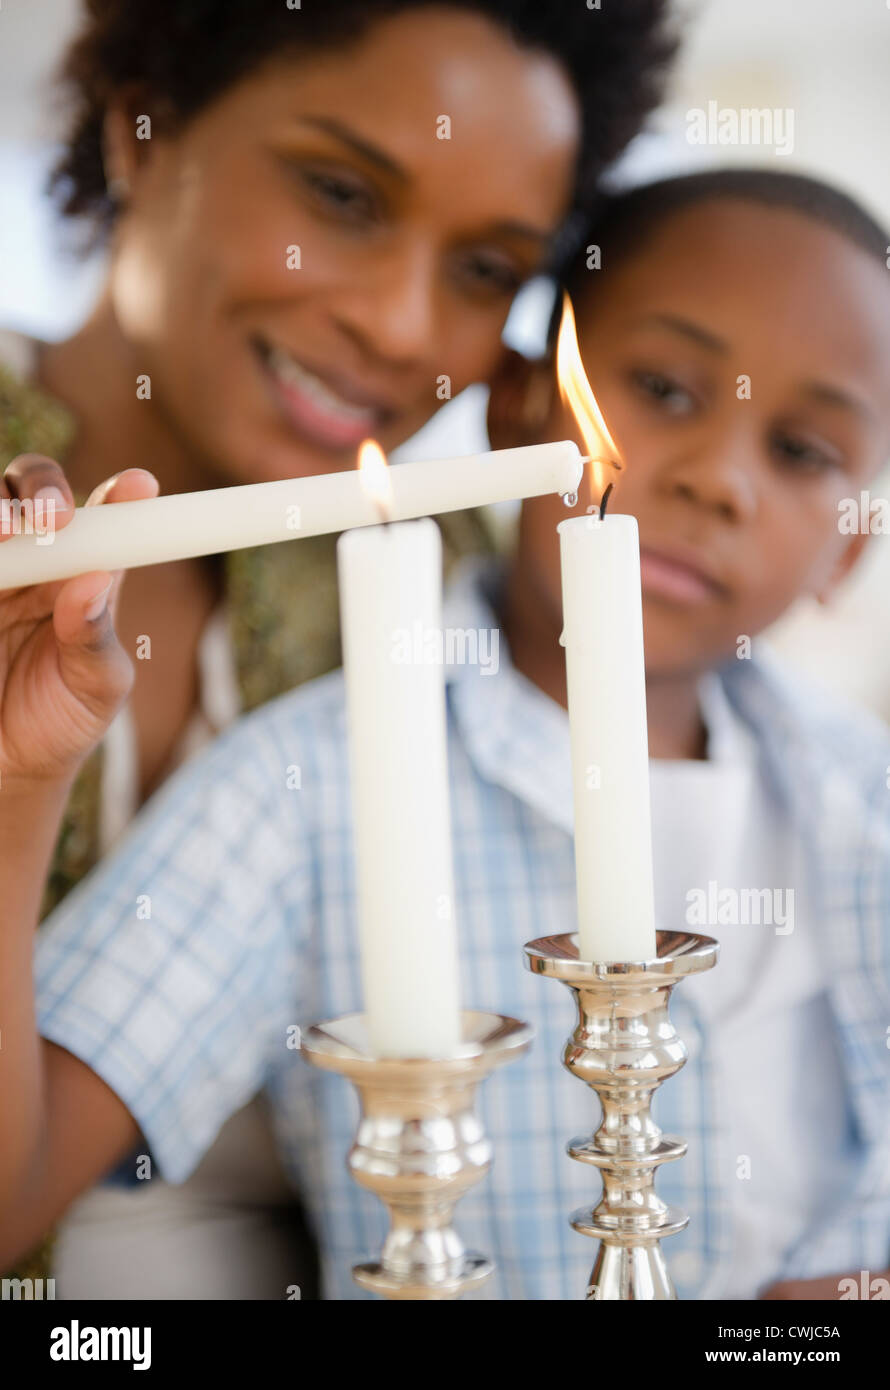 Nero madre e figlio accendendo candele insieme Foto Stock